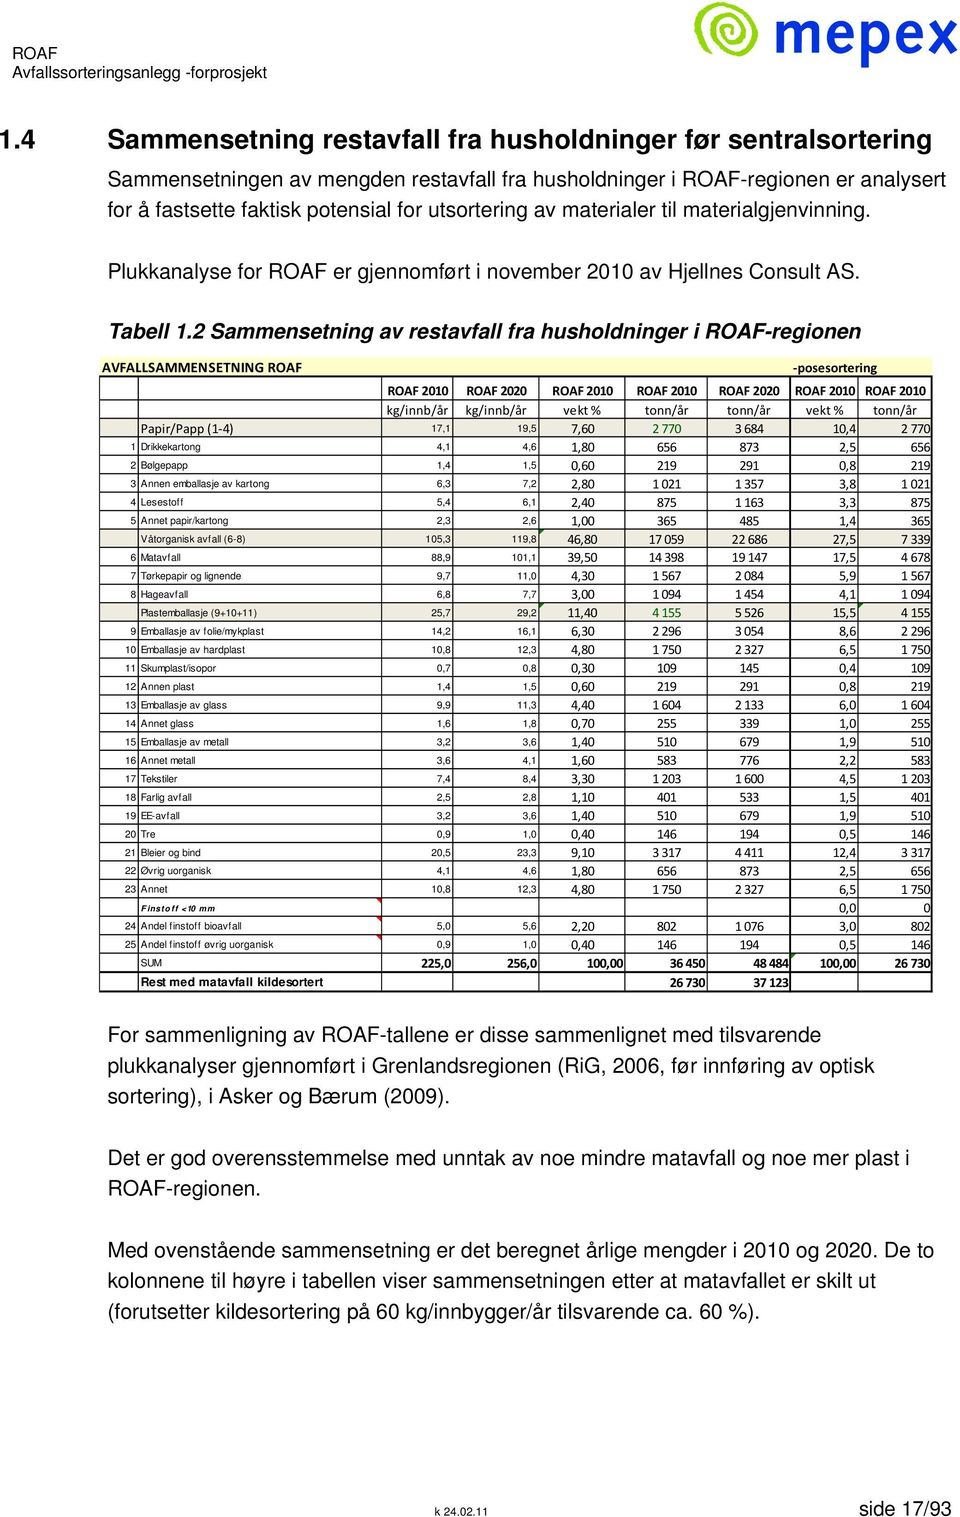 2 Sammensetning av restavfall fra husholdninger i ROAF-regionen AVFALLSAMMENSETNING ROAF posesortering ROAF 2010 ROAF 2020 ROAF 2010 ROAF 2010 ROAF 2020 ROAF 2010 ROAF 2010 kg/innb/år kg/innb/år vekt